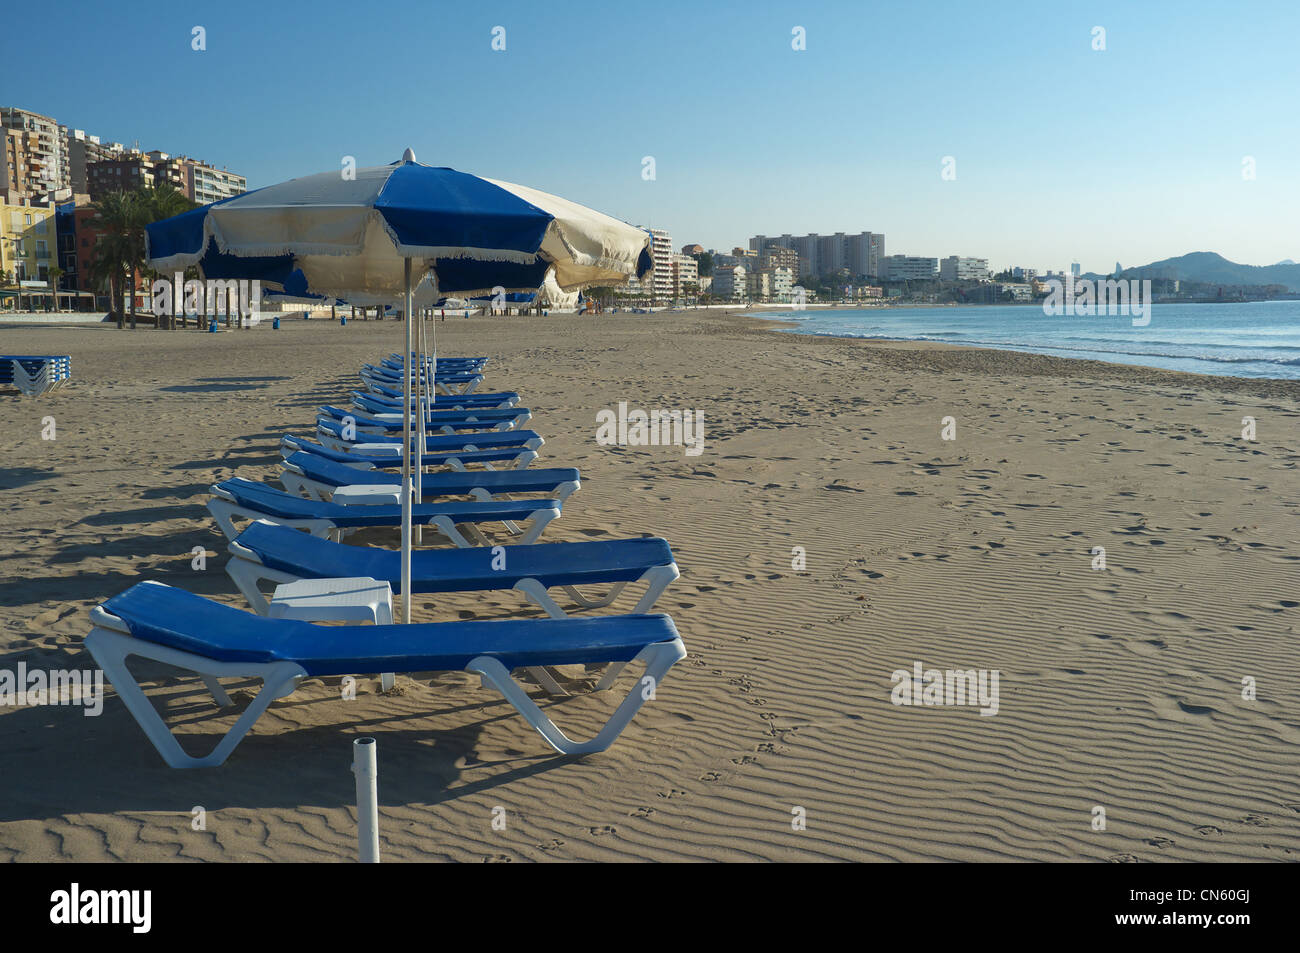 Sedie a sdraio su una spiaggia mediterranea, pronto per l'estate Foto Stock